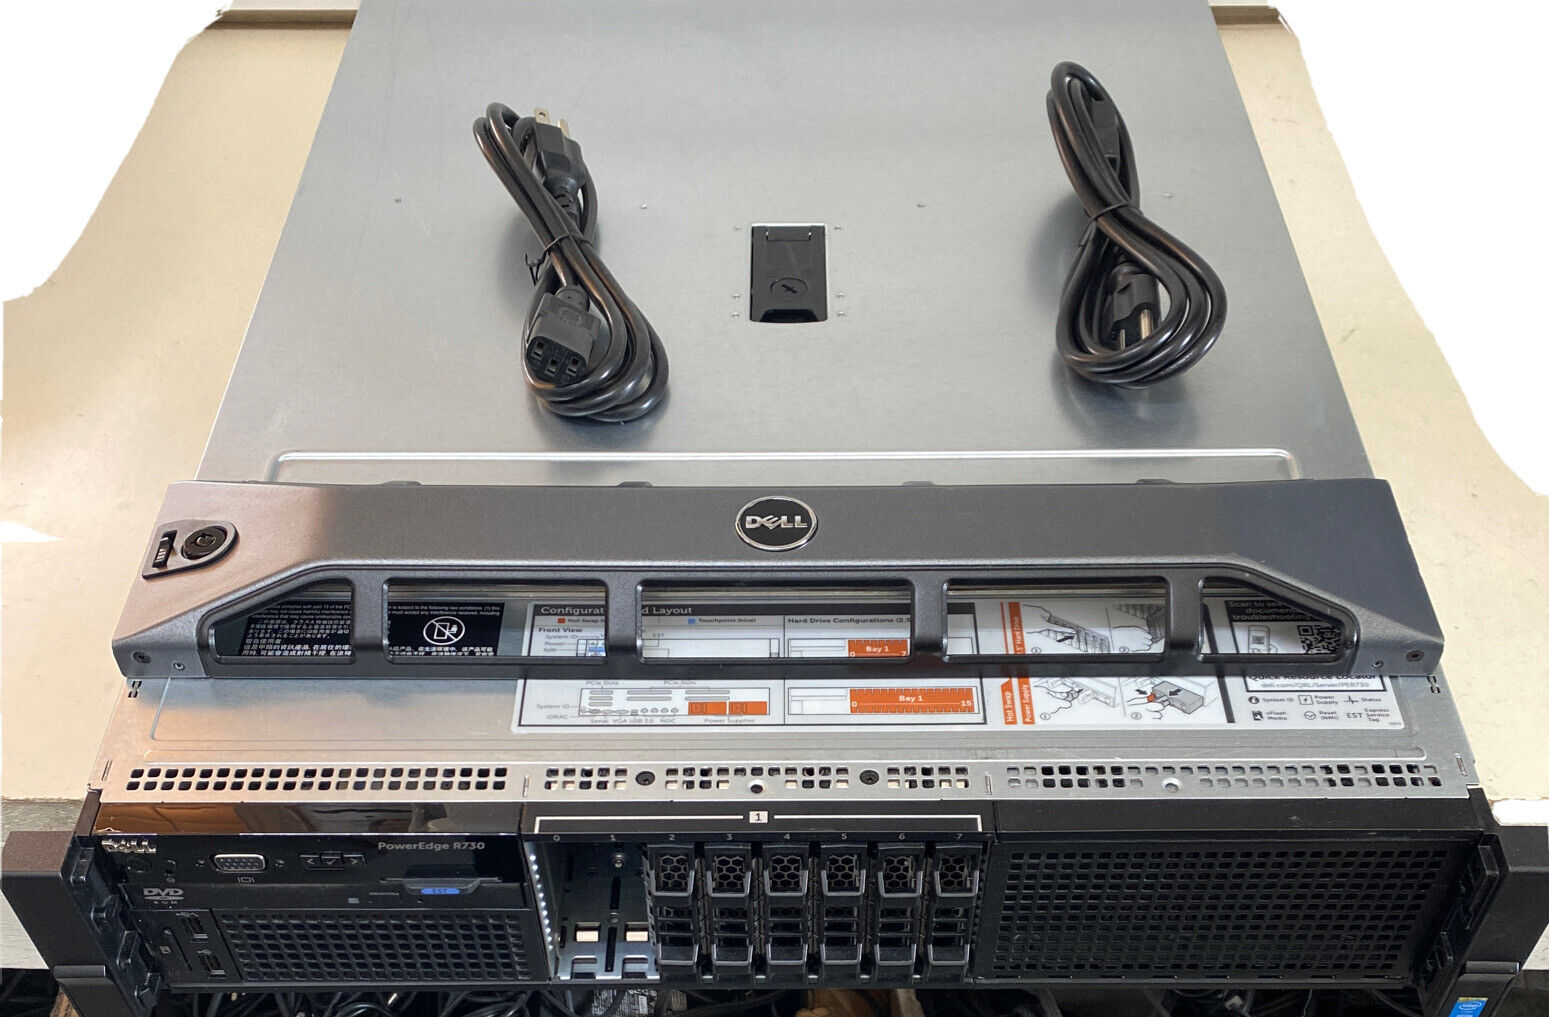 Dell PowerEdge R730 Server - 2x E5-2620 V3 2.4GHz 12 Cores 32gb Ram 1100w PSUs